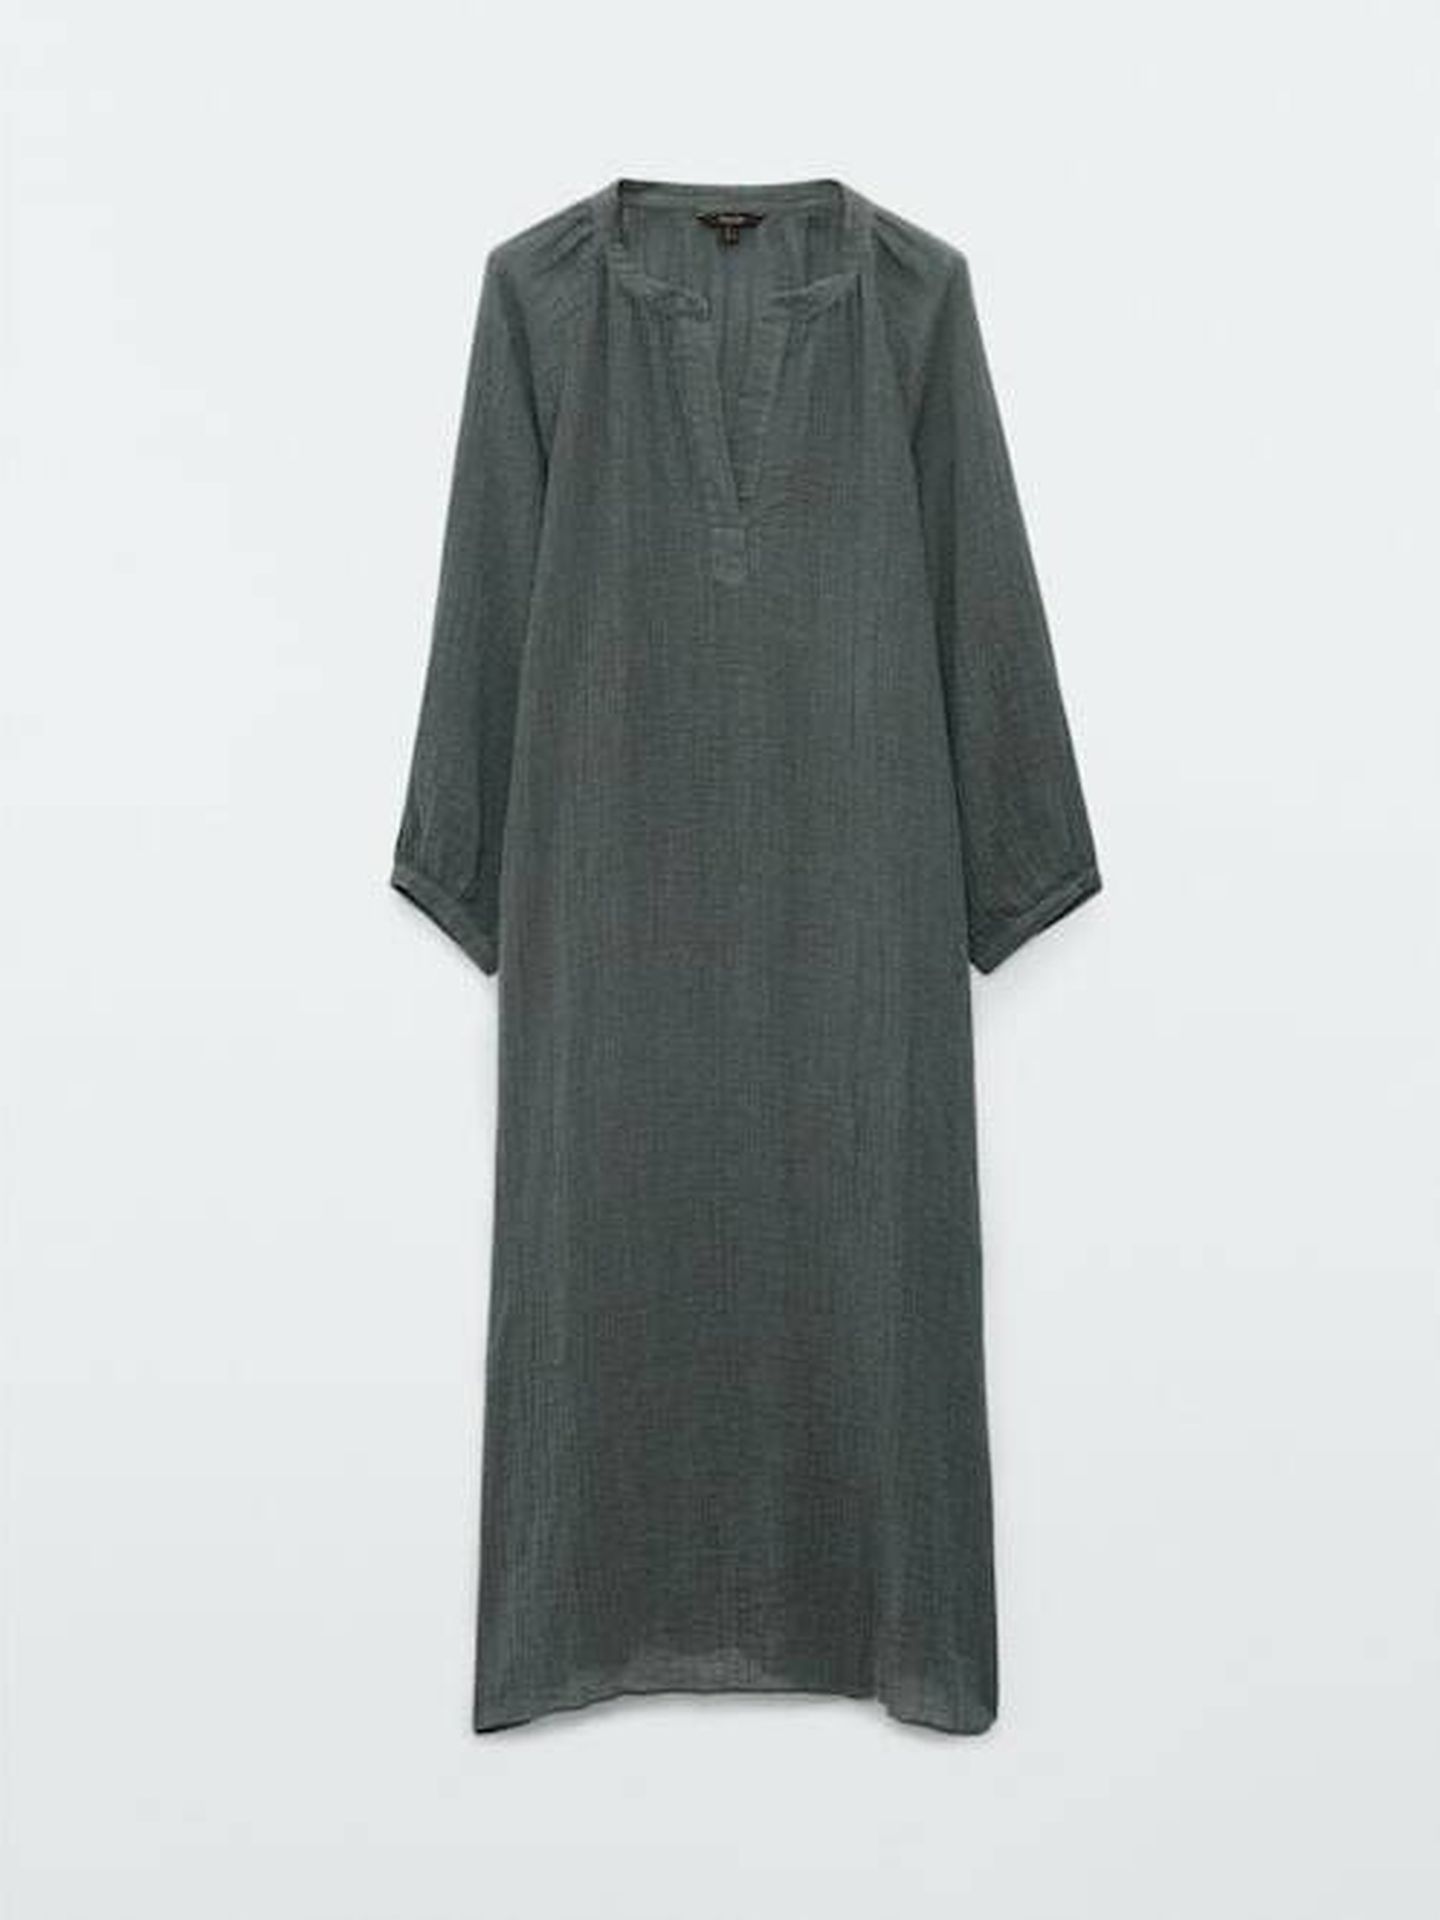 El vestido de lino de Massimo Dutti ideal para el verano. (Cortesía)